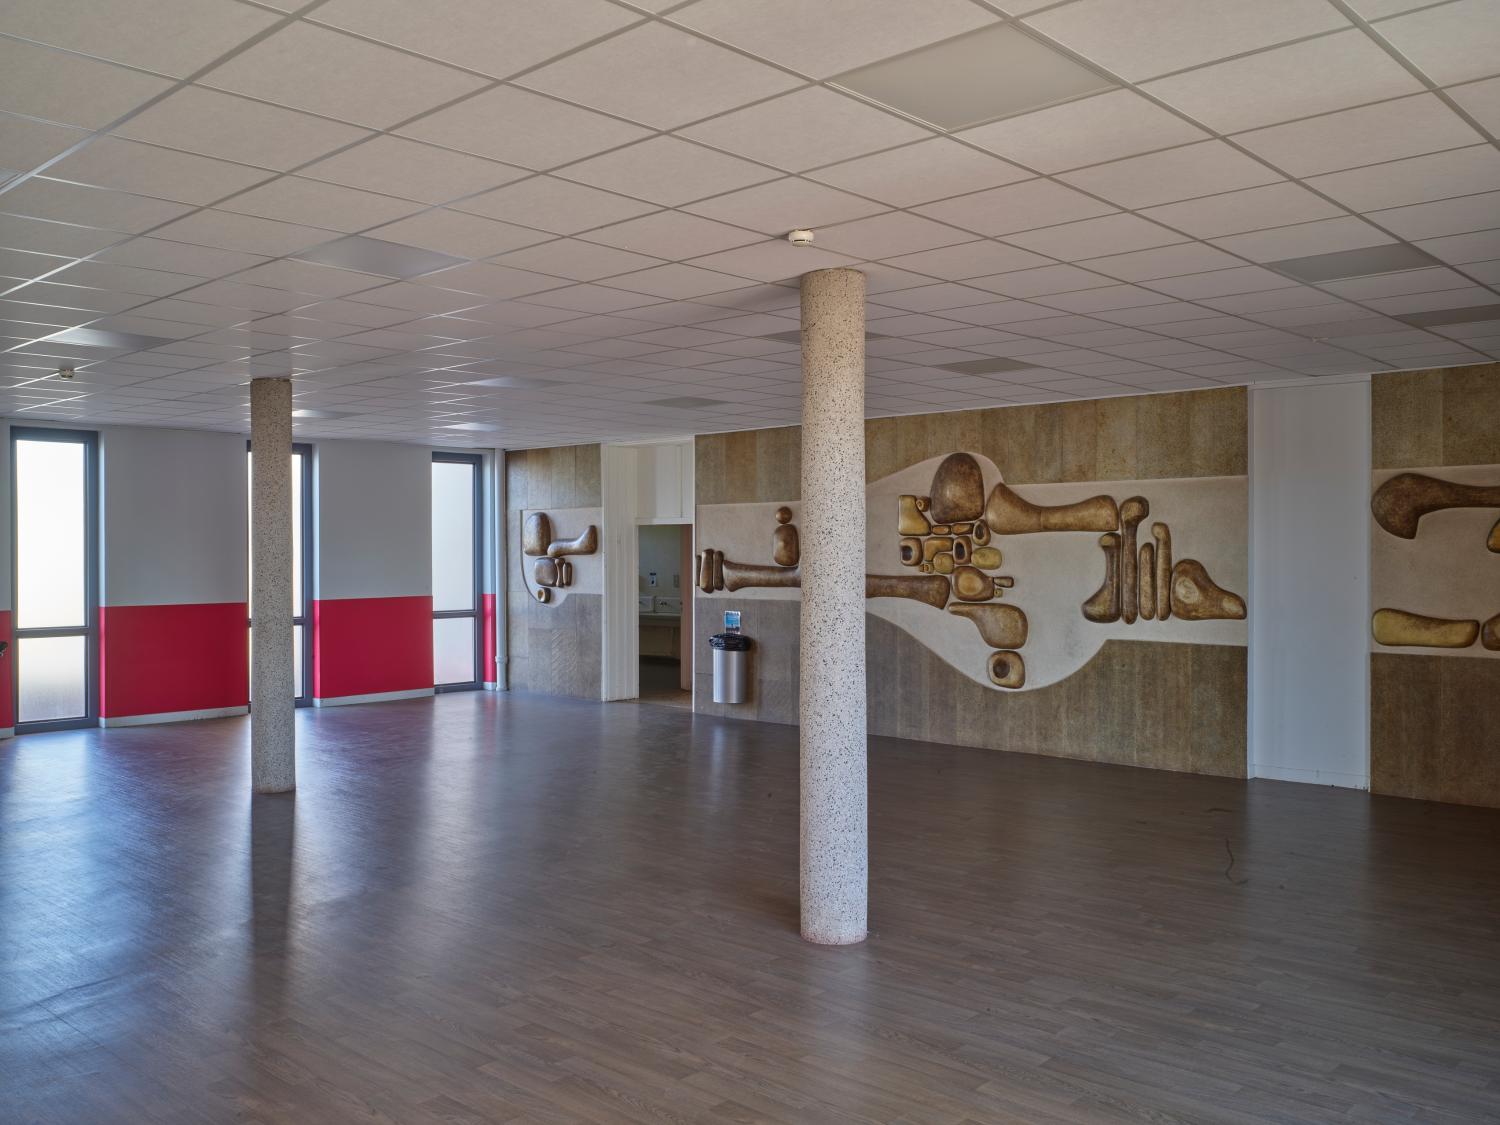 Oeuvres du 1% artistique du lycée La Fayette de Brioude : une sculpture et deux panneaux muraux